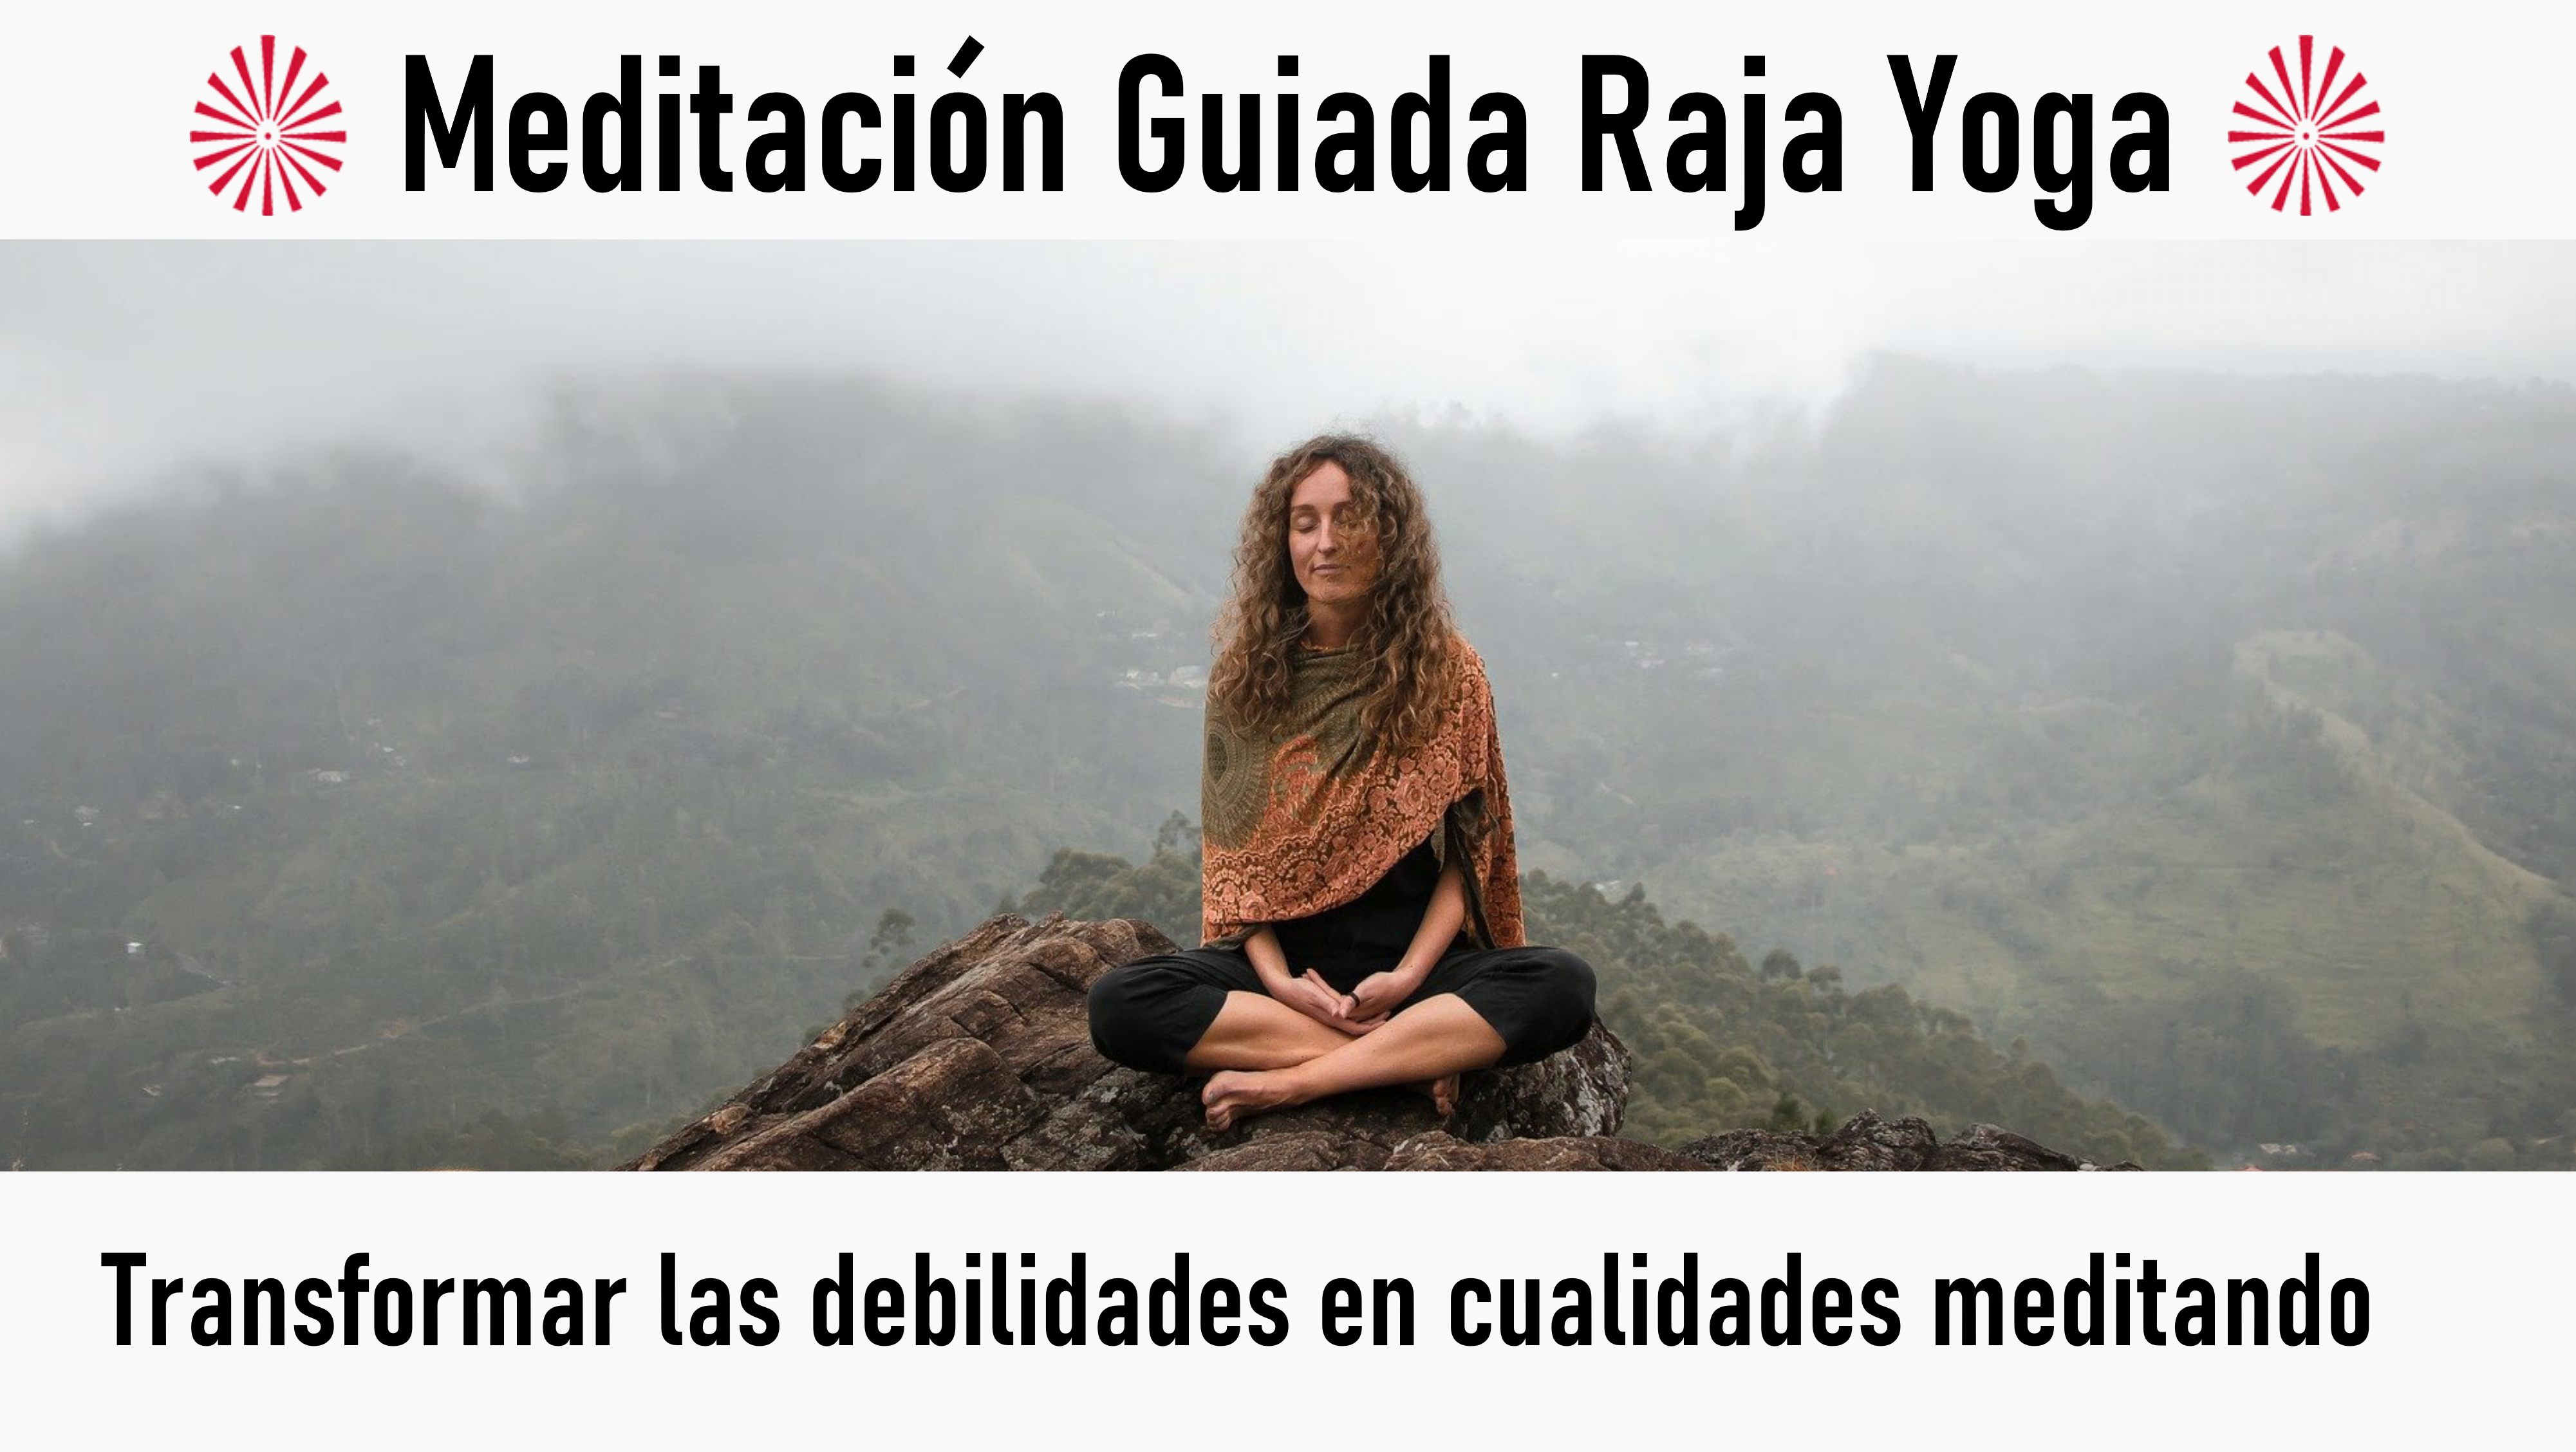 Meditación Raja Yoga: Transformar las debilidades en cualidades meditando (5 Agosto 2020) On-line desde Sevilla